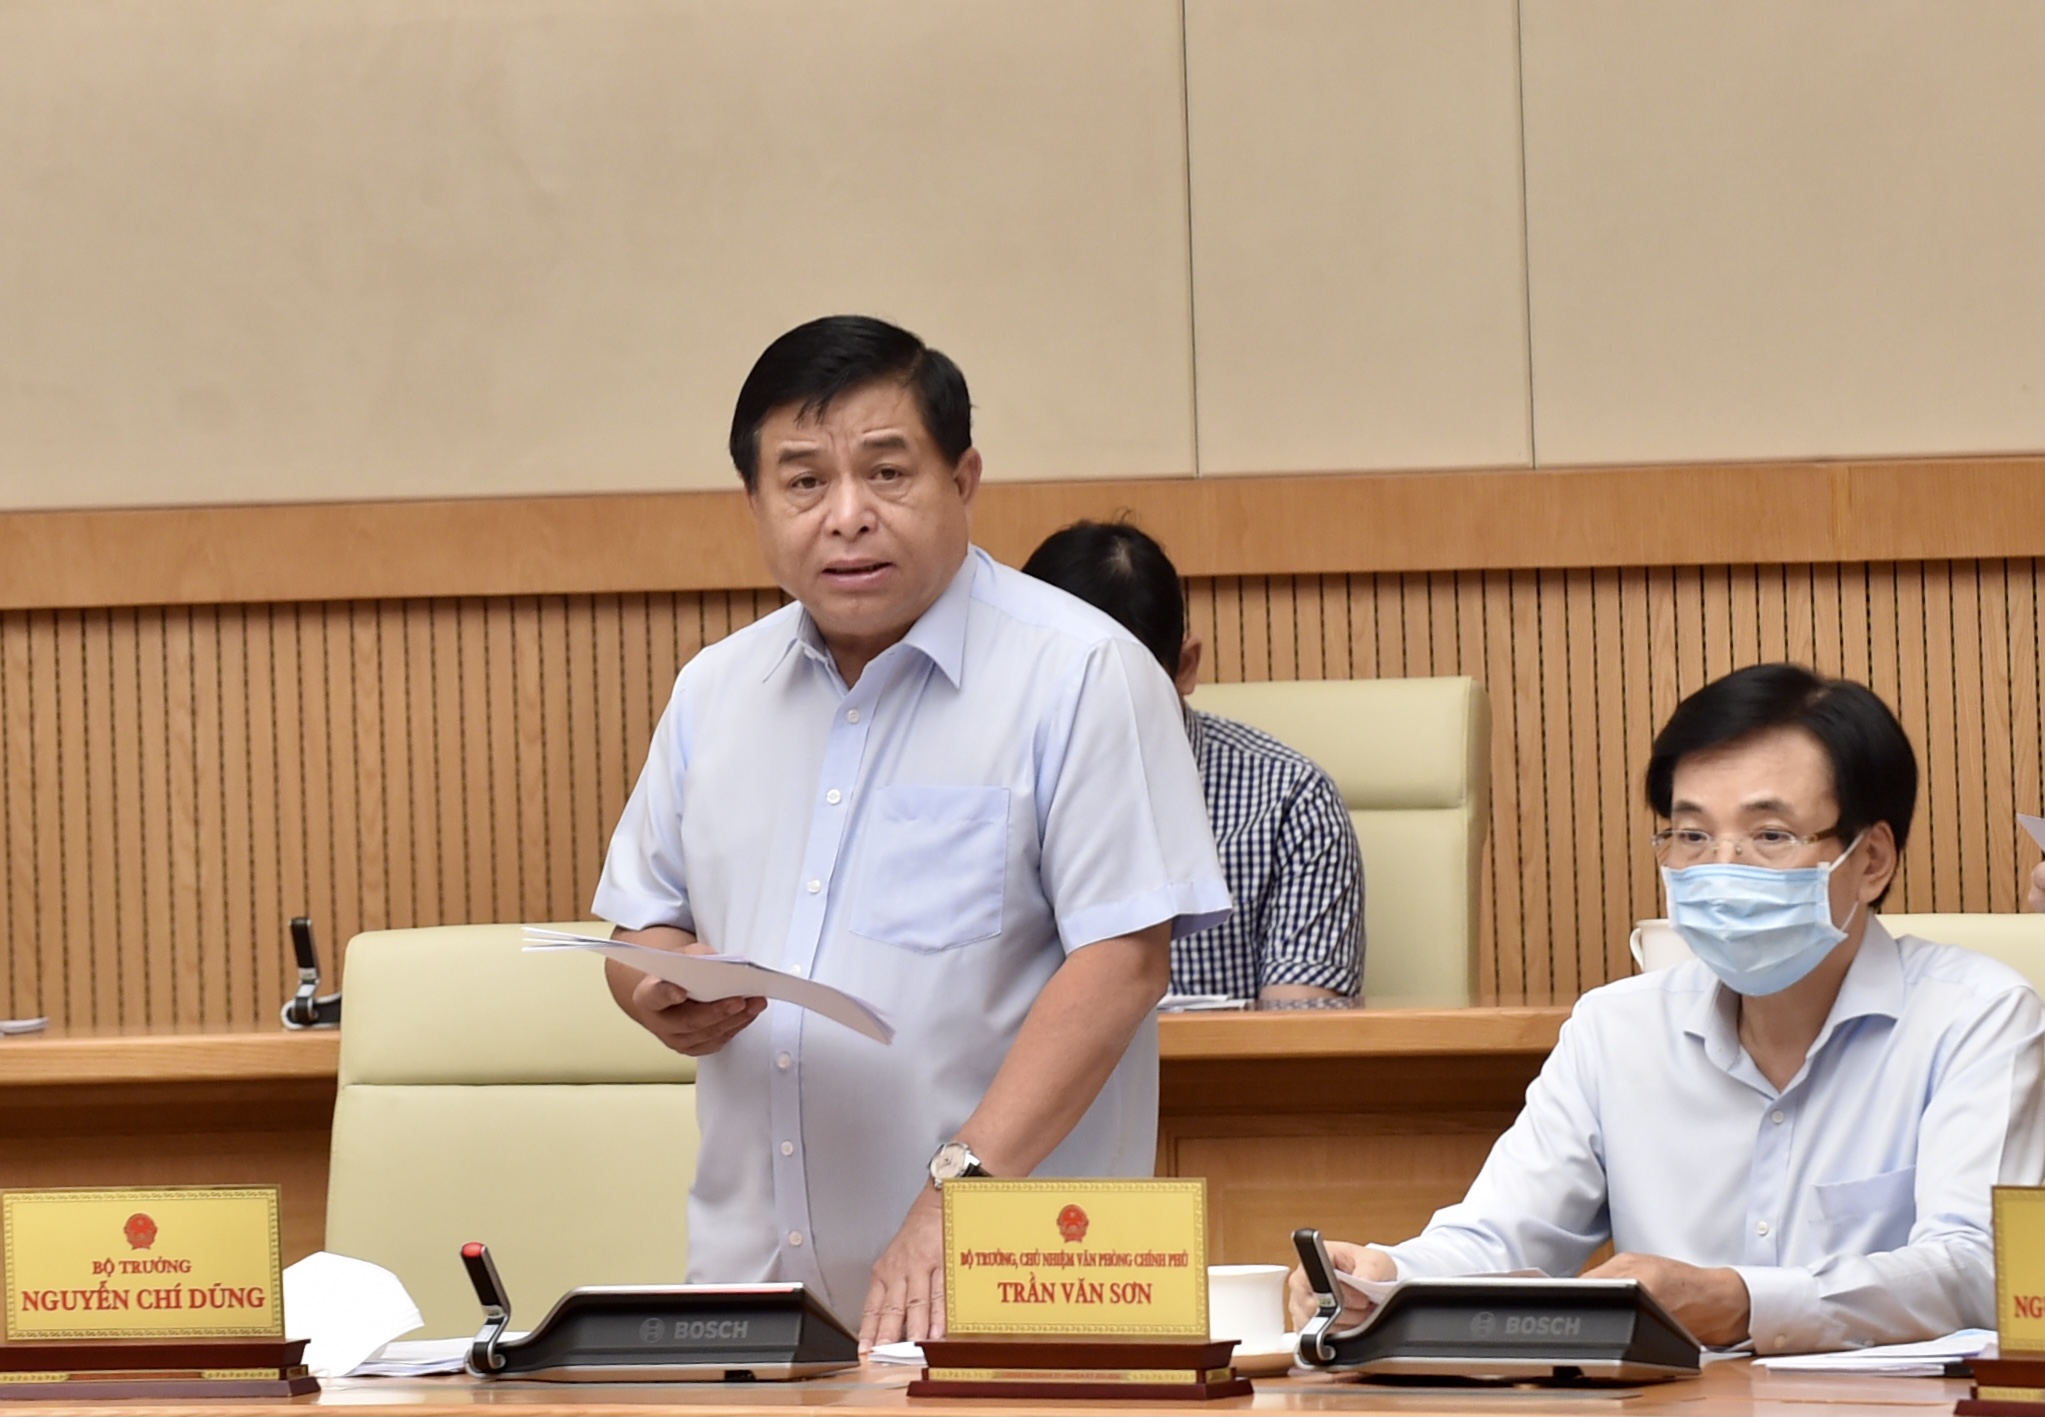 Bộ trưởng Bộ Kế hoạch và Đầu tư Nguyễn Chí Dũng báo cáo tóm tắt về tình hình triển khai thực hiện Luật Quy hoạch. Ảnh: VGP/Nhật Bắc